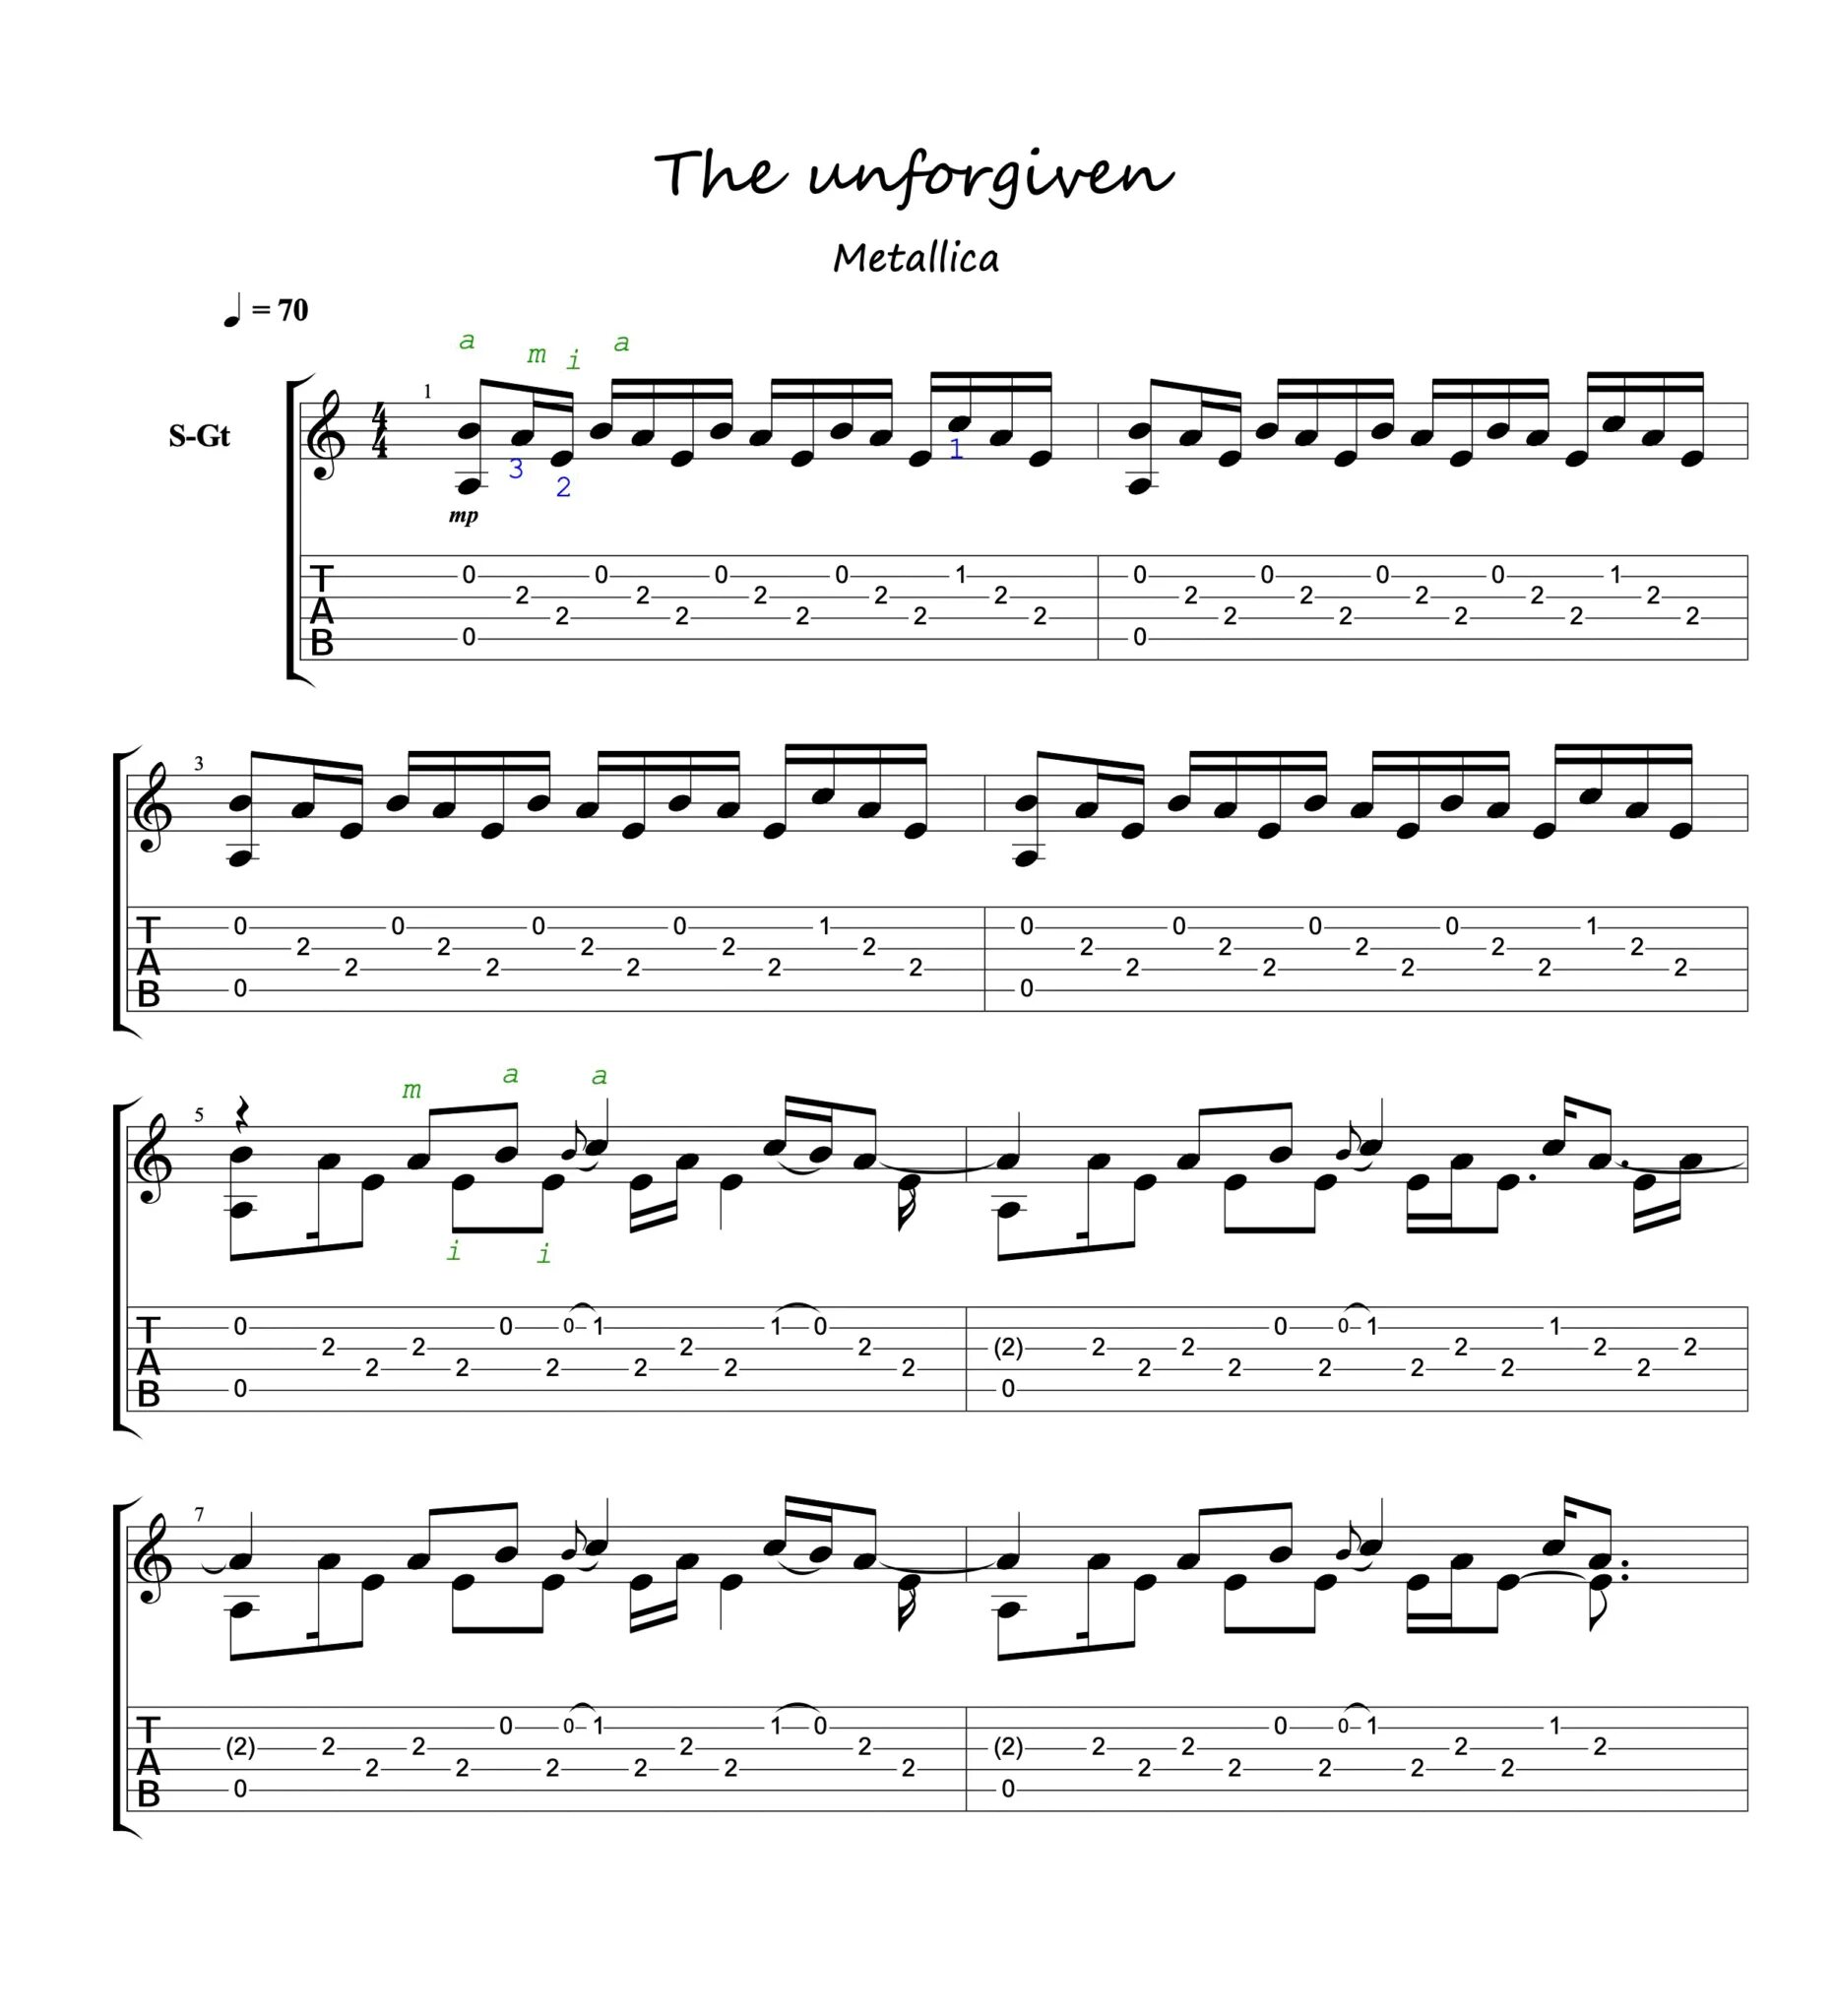 Metallica Unforgiven табы. Unforgiven Guitar Tab. Metallica табы для гитары. Unforgiven Tabs электрогитаре. The unforgiven текст